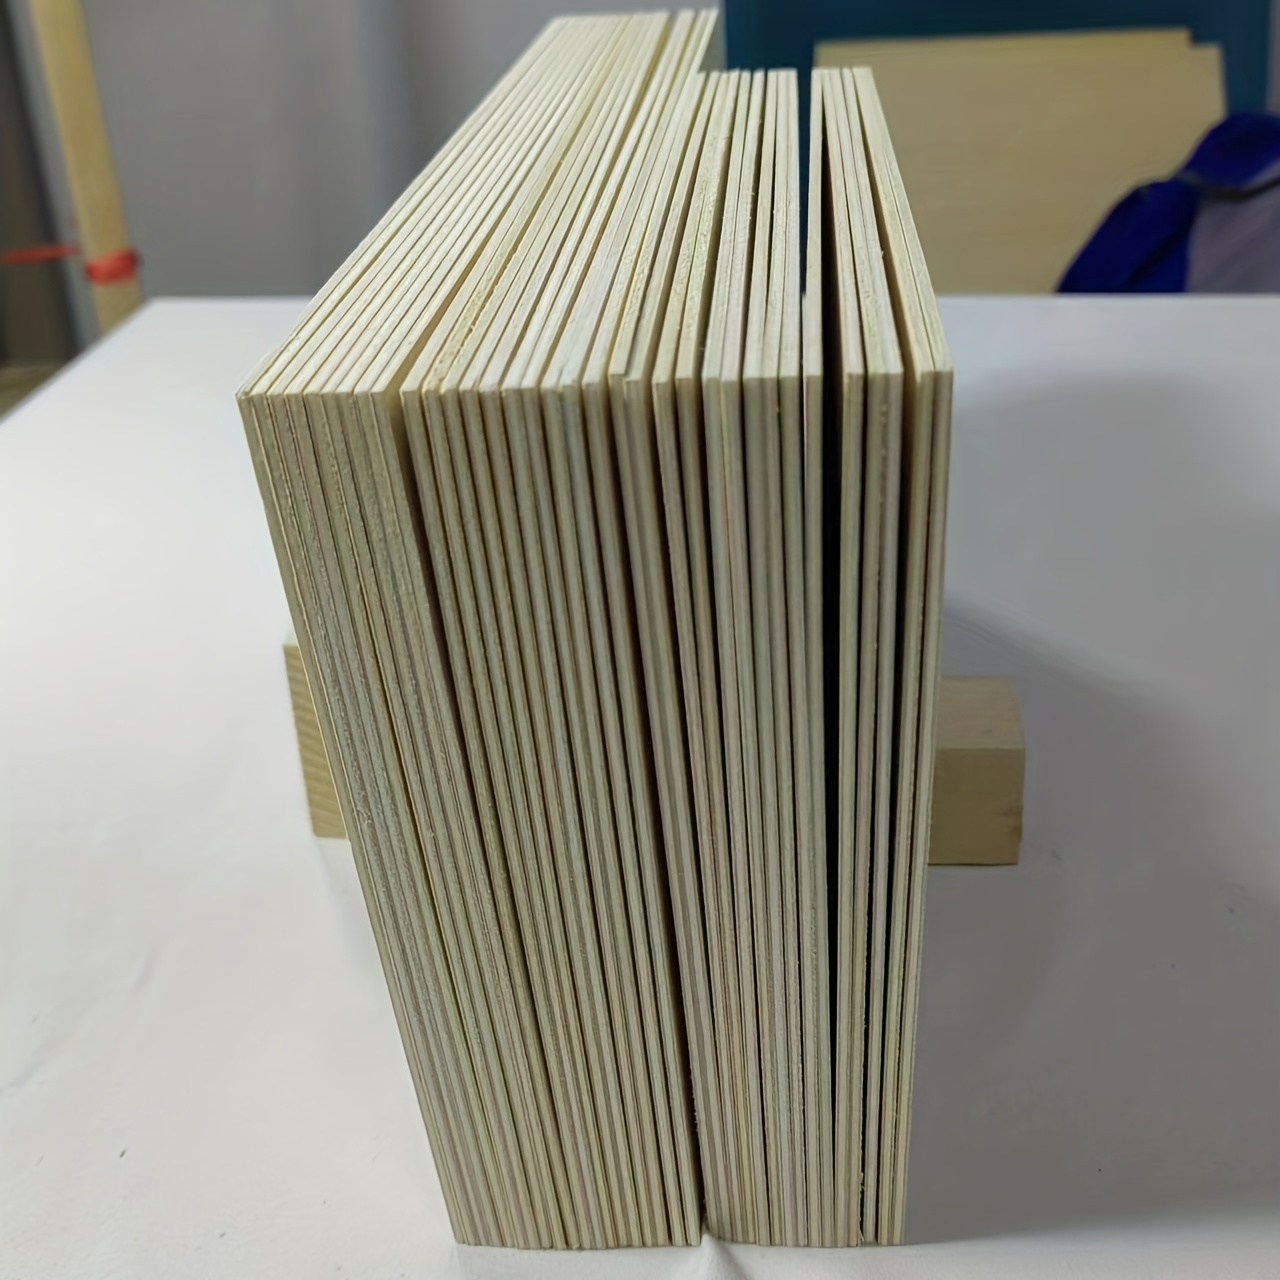 Paquete de 12 hojas de madera de tilo de 11.8 x 11.8 pulgadas, hojas finas  de madera contrachapada, hojas de tilo de 1/8 pulgadas, tableros cuadrados